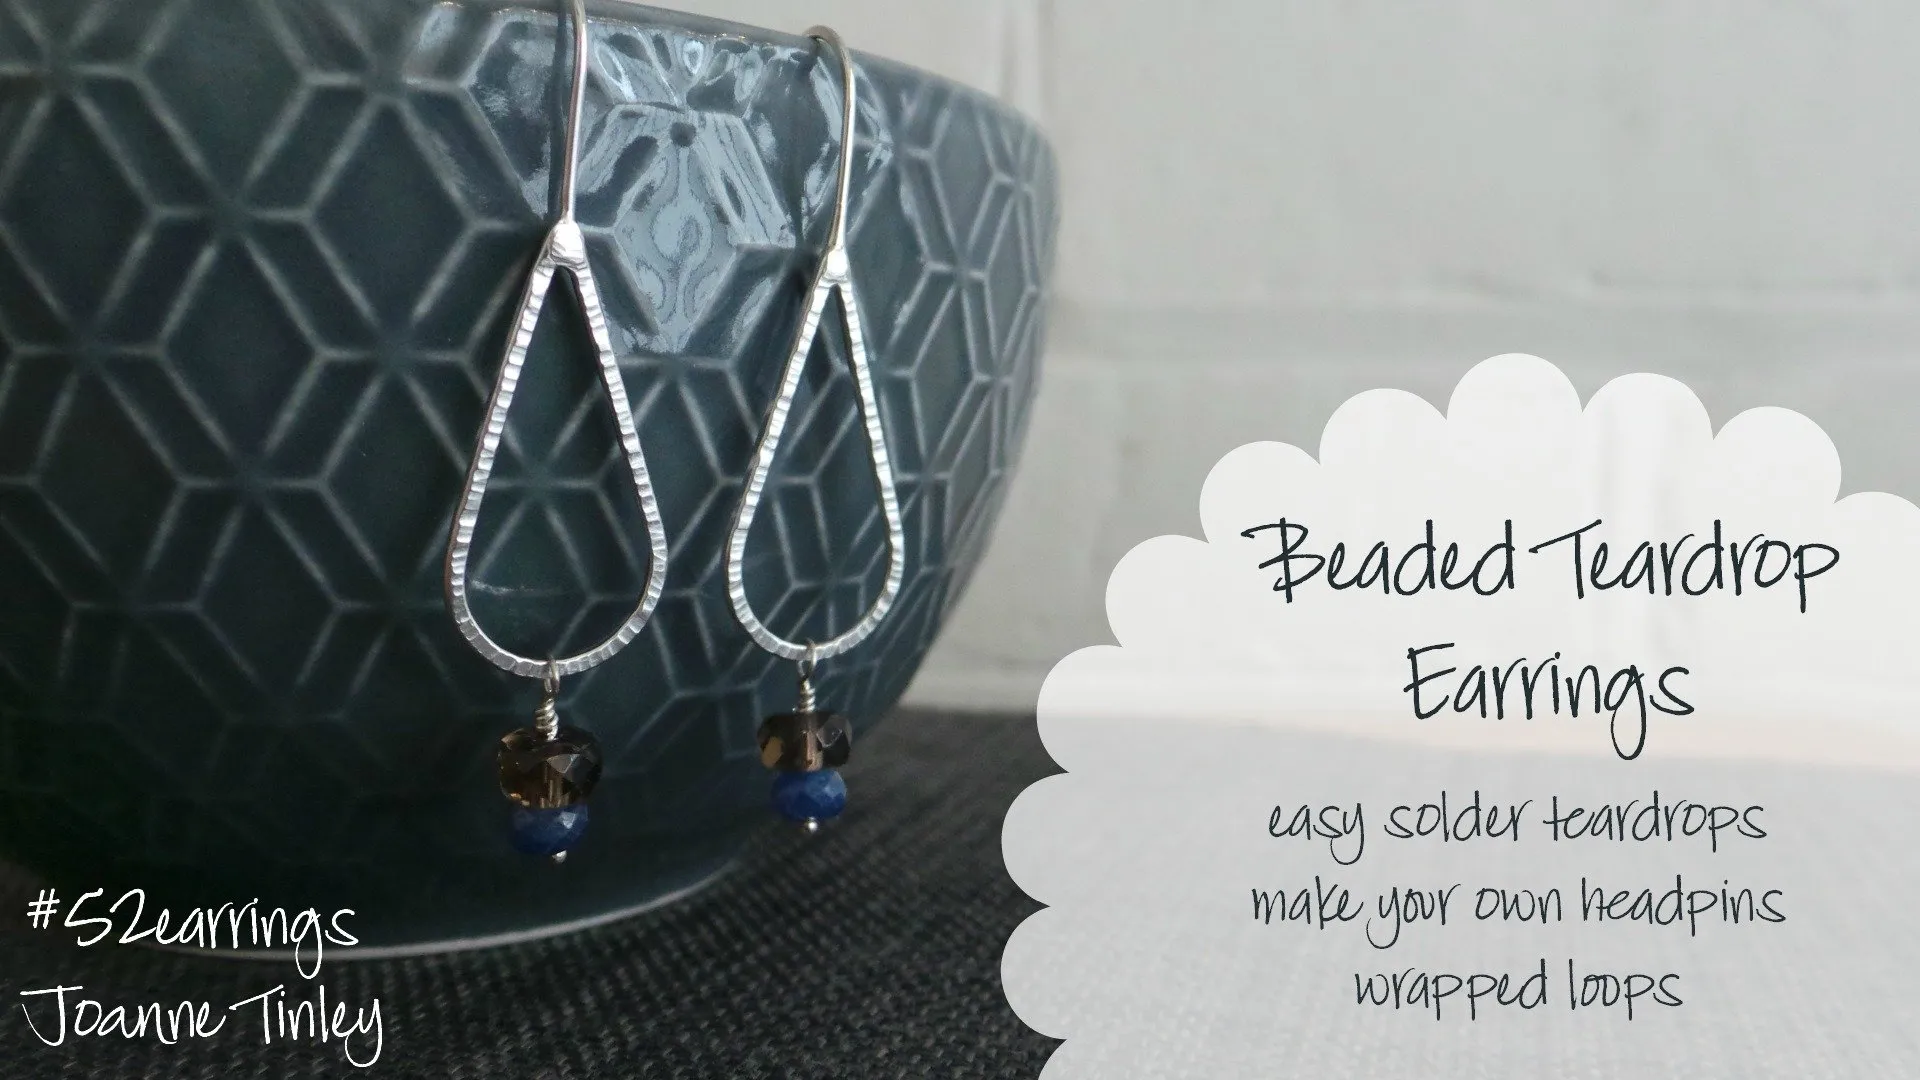 Beaded Teardrops Earrings - learn how to make headpins & soldered teardrops